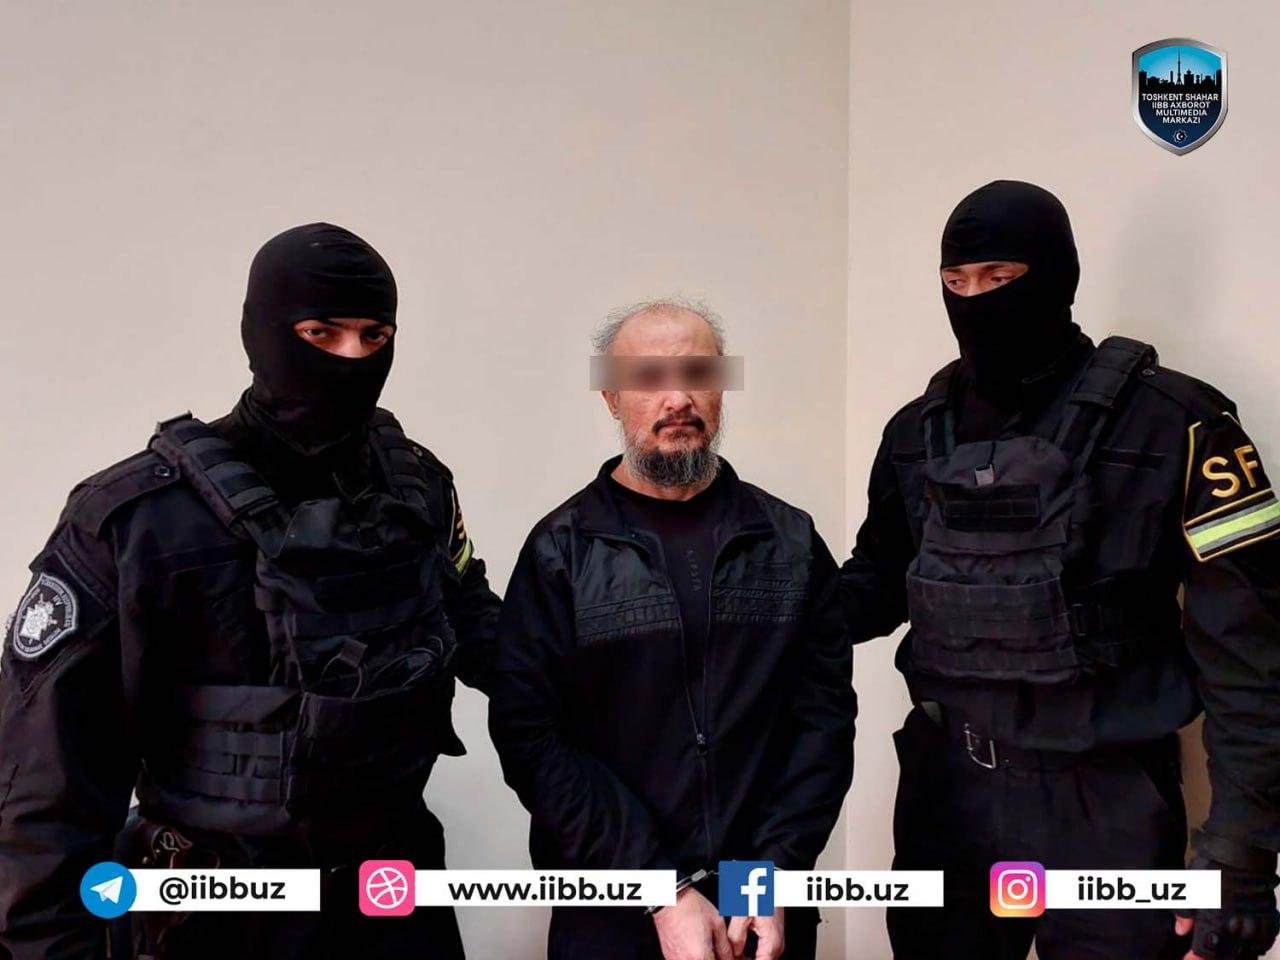 В Ташкенте задержали 50 подозреваемых, склонных к экстремизму и терроризму